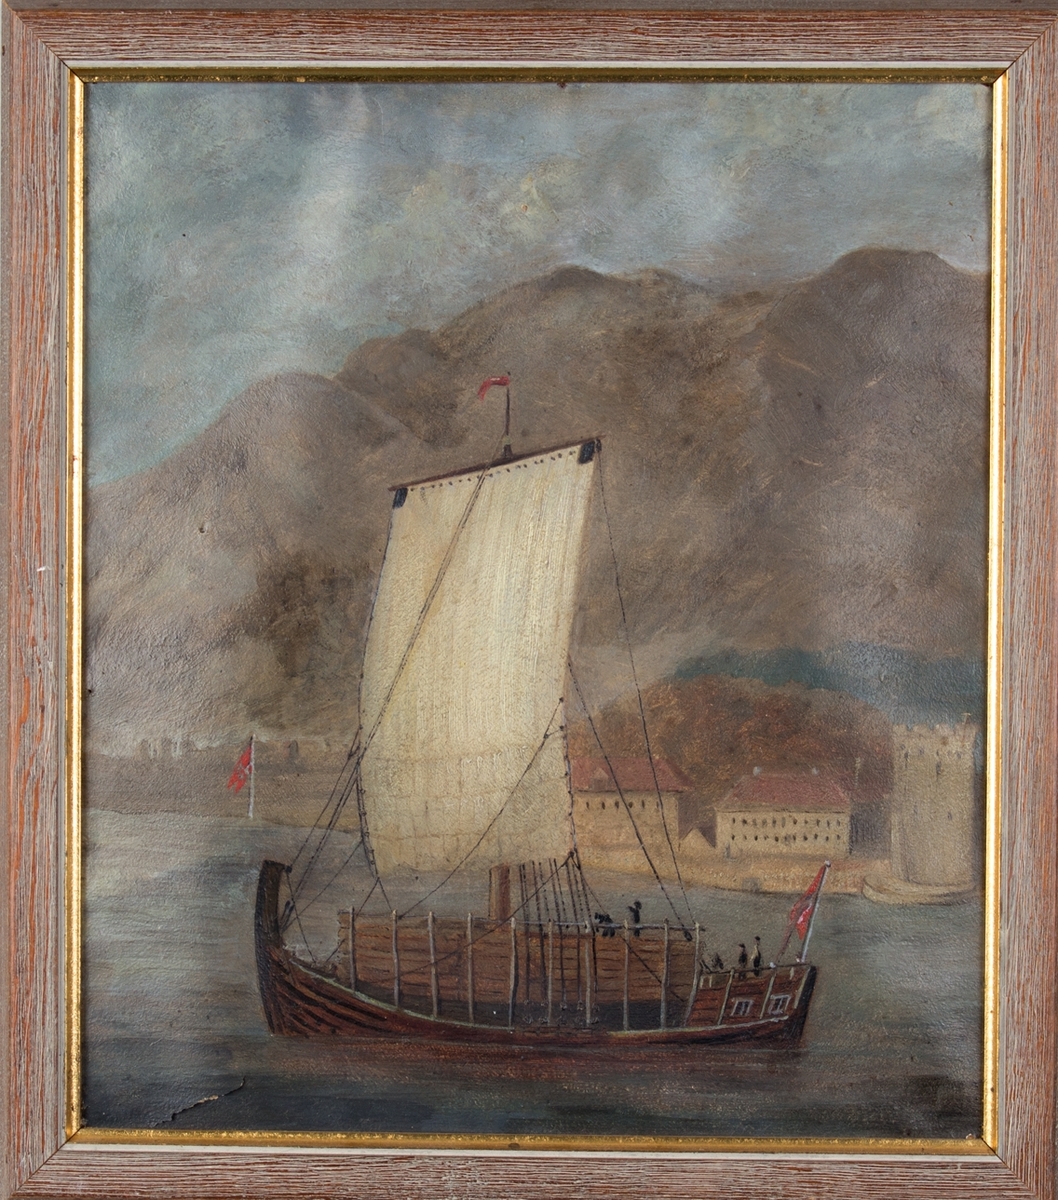 Nordlandsjekt seilende ut av Bergens våg, Rosenkrantztårnet uten tak ses i bakgrunnen, hvilket tyder på at bildet er malt mellom 1848 og 1864.